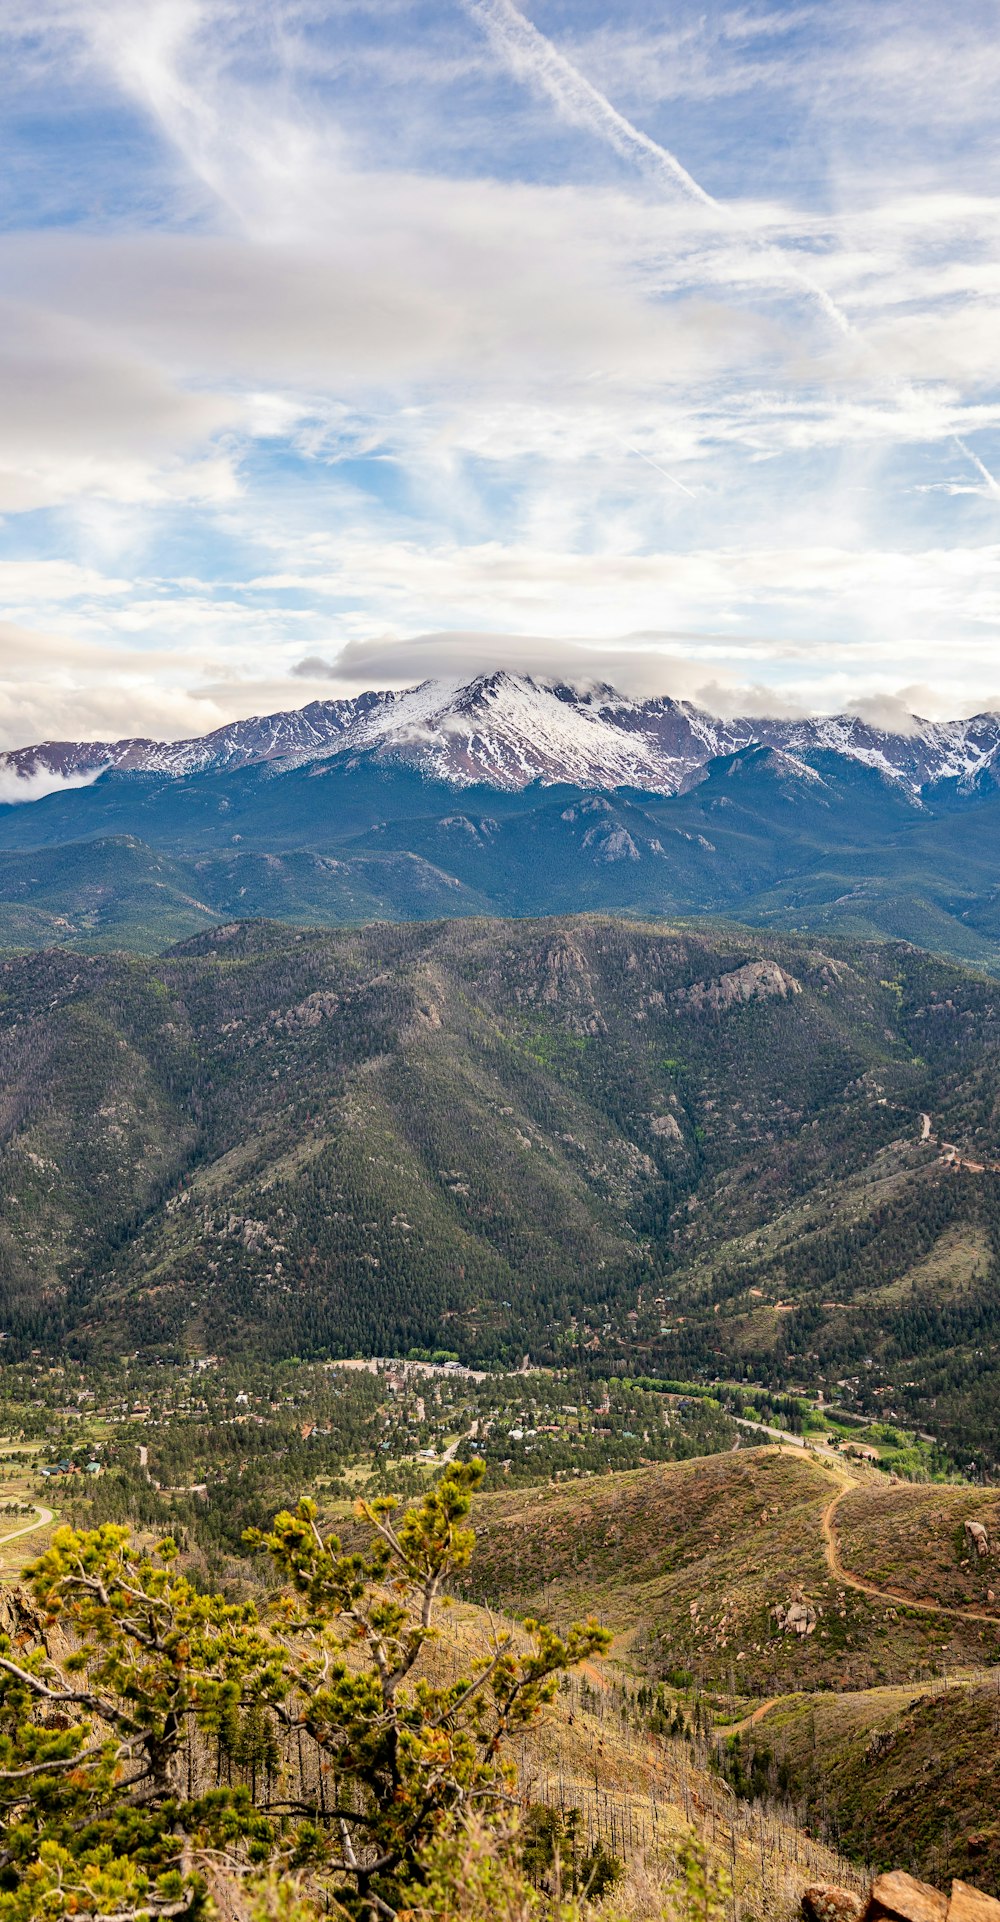 Una vista de una cadena montañosa con montañas nevadas en la distancia